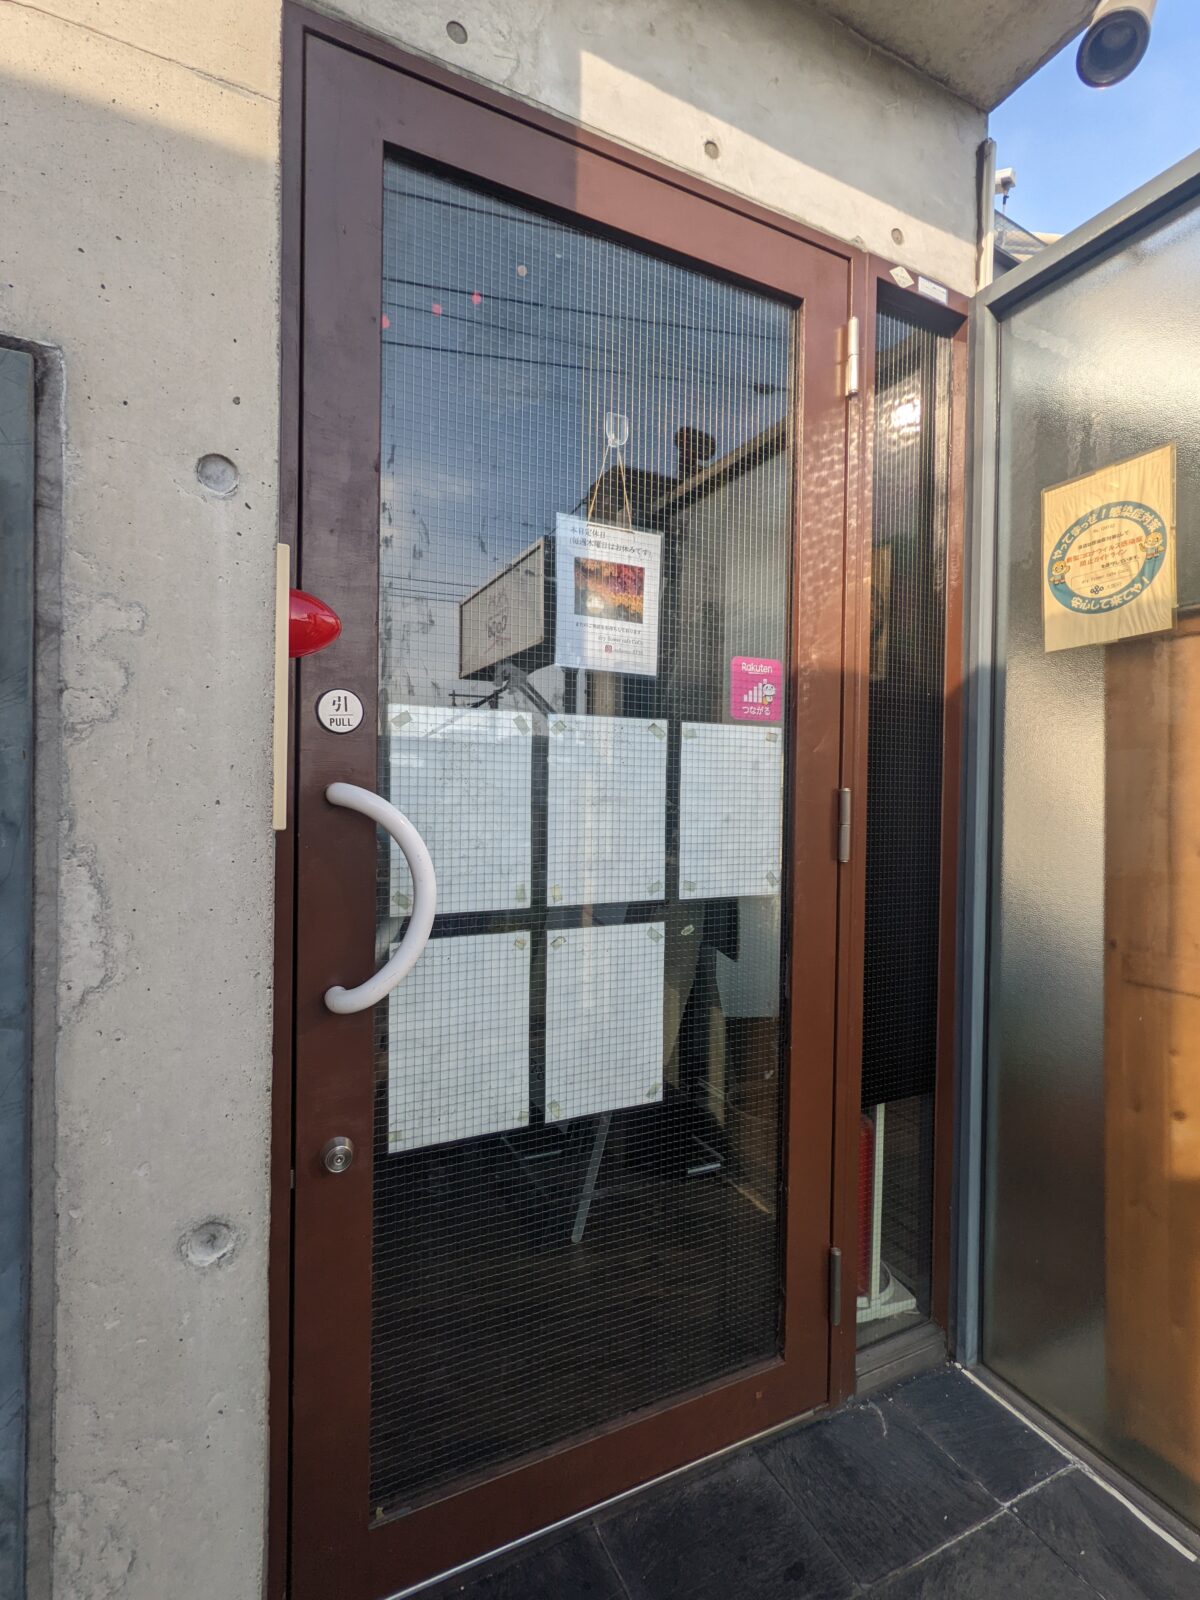 【祝リニューアルオープン】堺市北区・金岡町にあるドライフラワーいっぱいのオシャレカフェ『ドライフラワーカフェcoco』がリニューアルしたみたいです！：